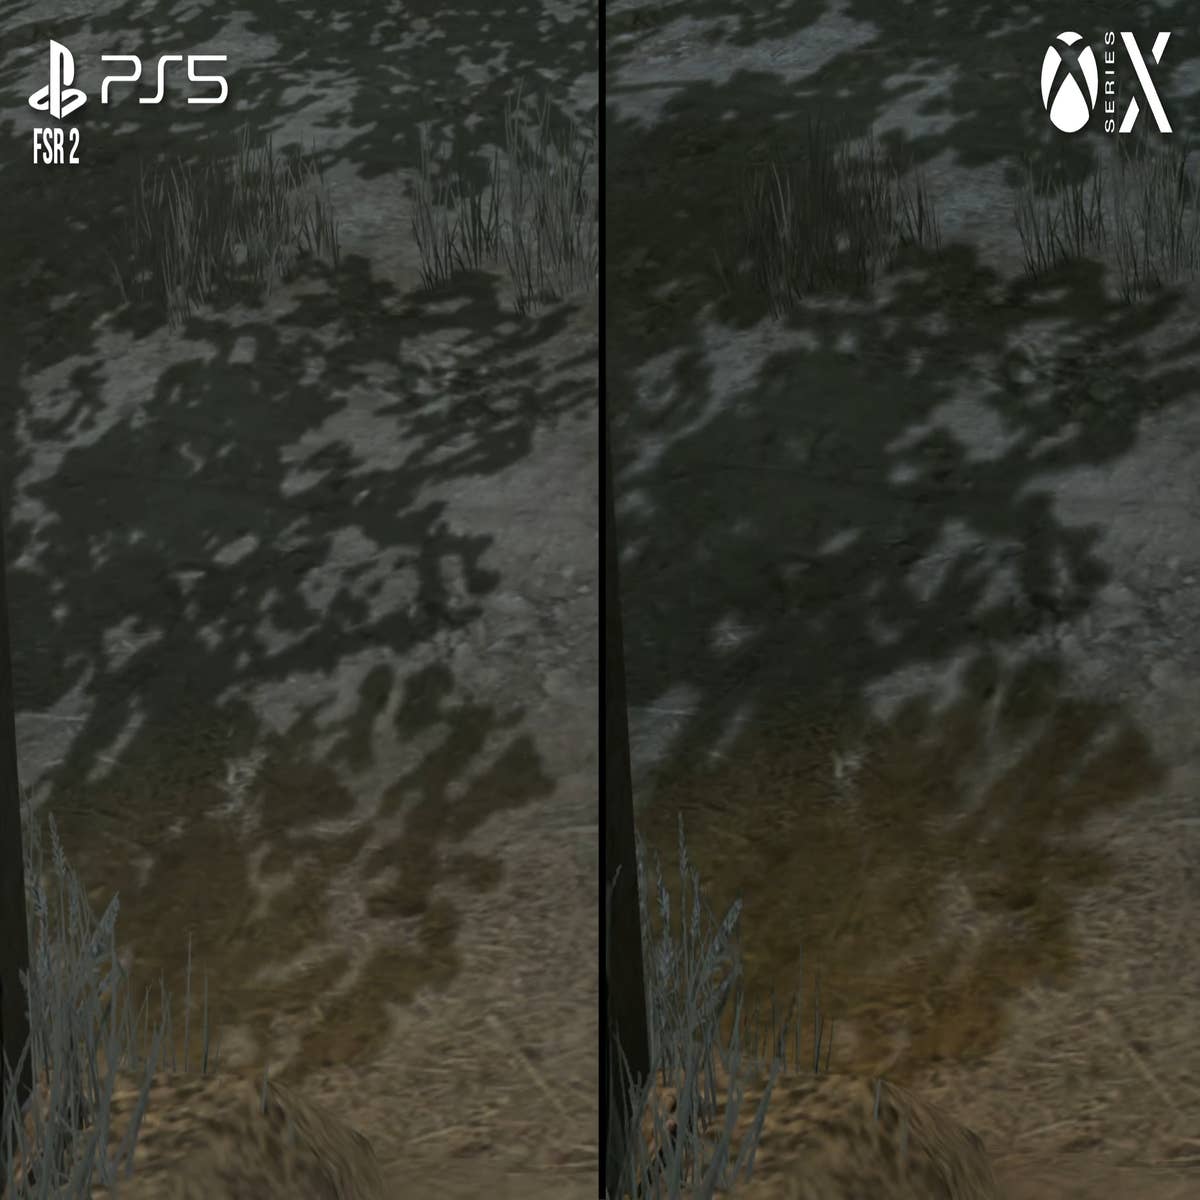 Red Dead Redemption 2 Graphics Comparison (PC vs PS4 Pro) 